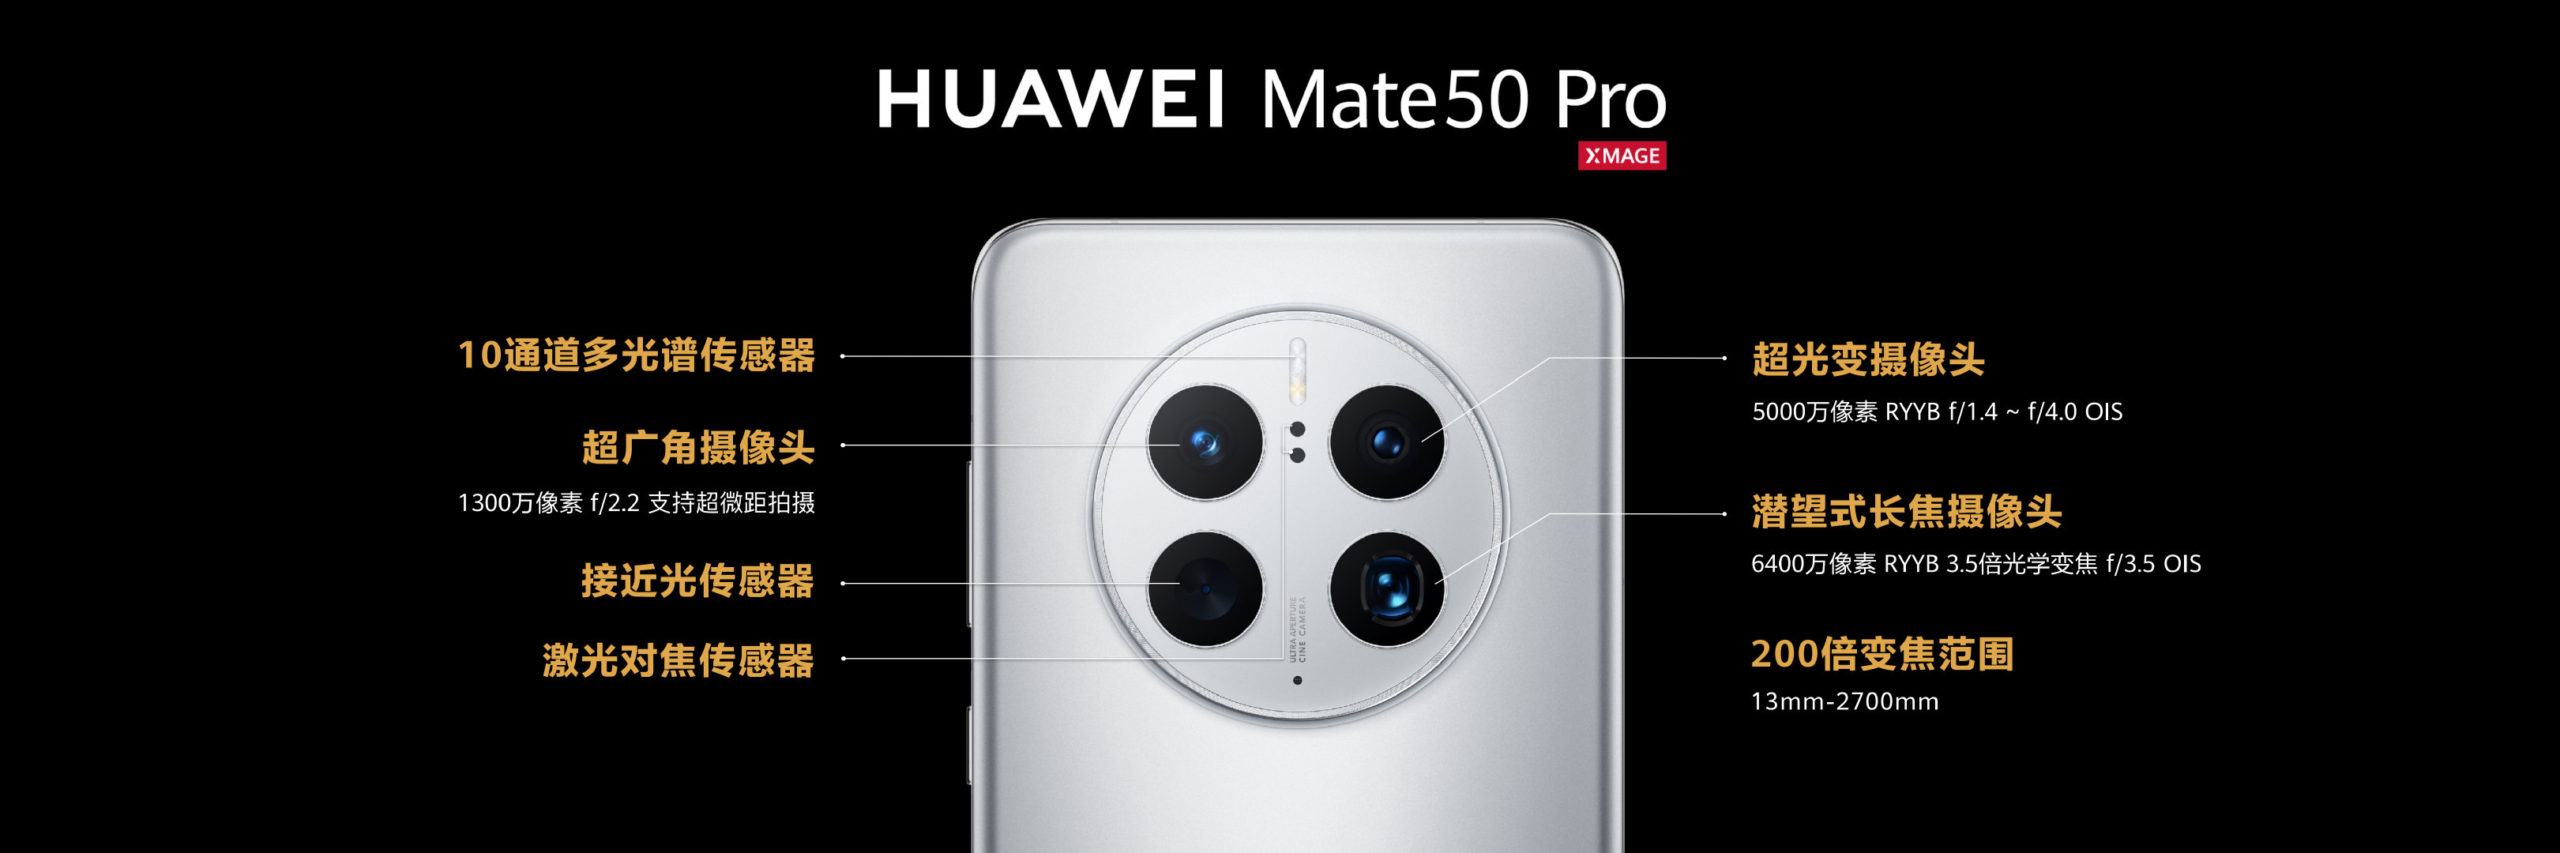 HUAWEI Mate 50 Pro dengan teknologi kamera XMAGE kini mula memasuki pasaran global 11